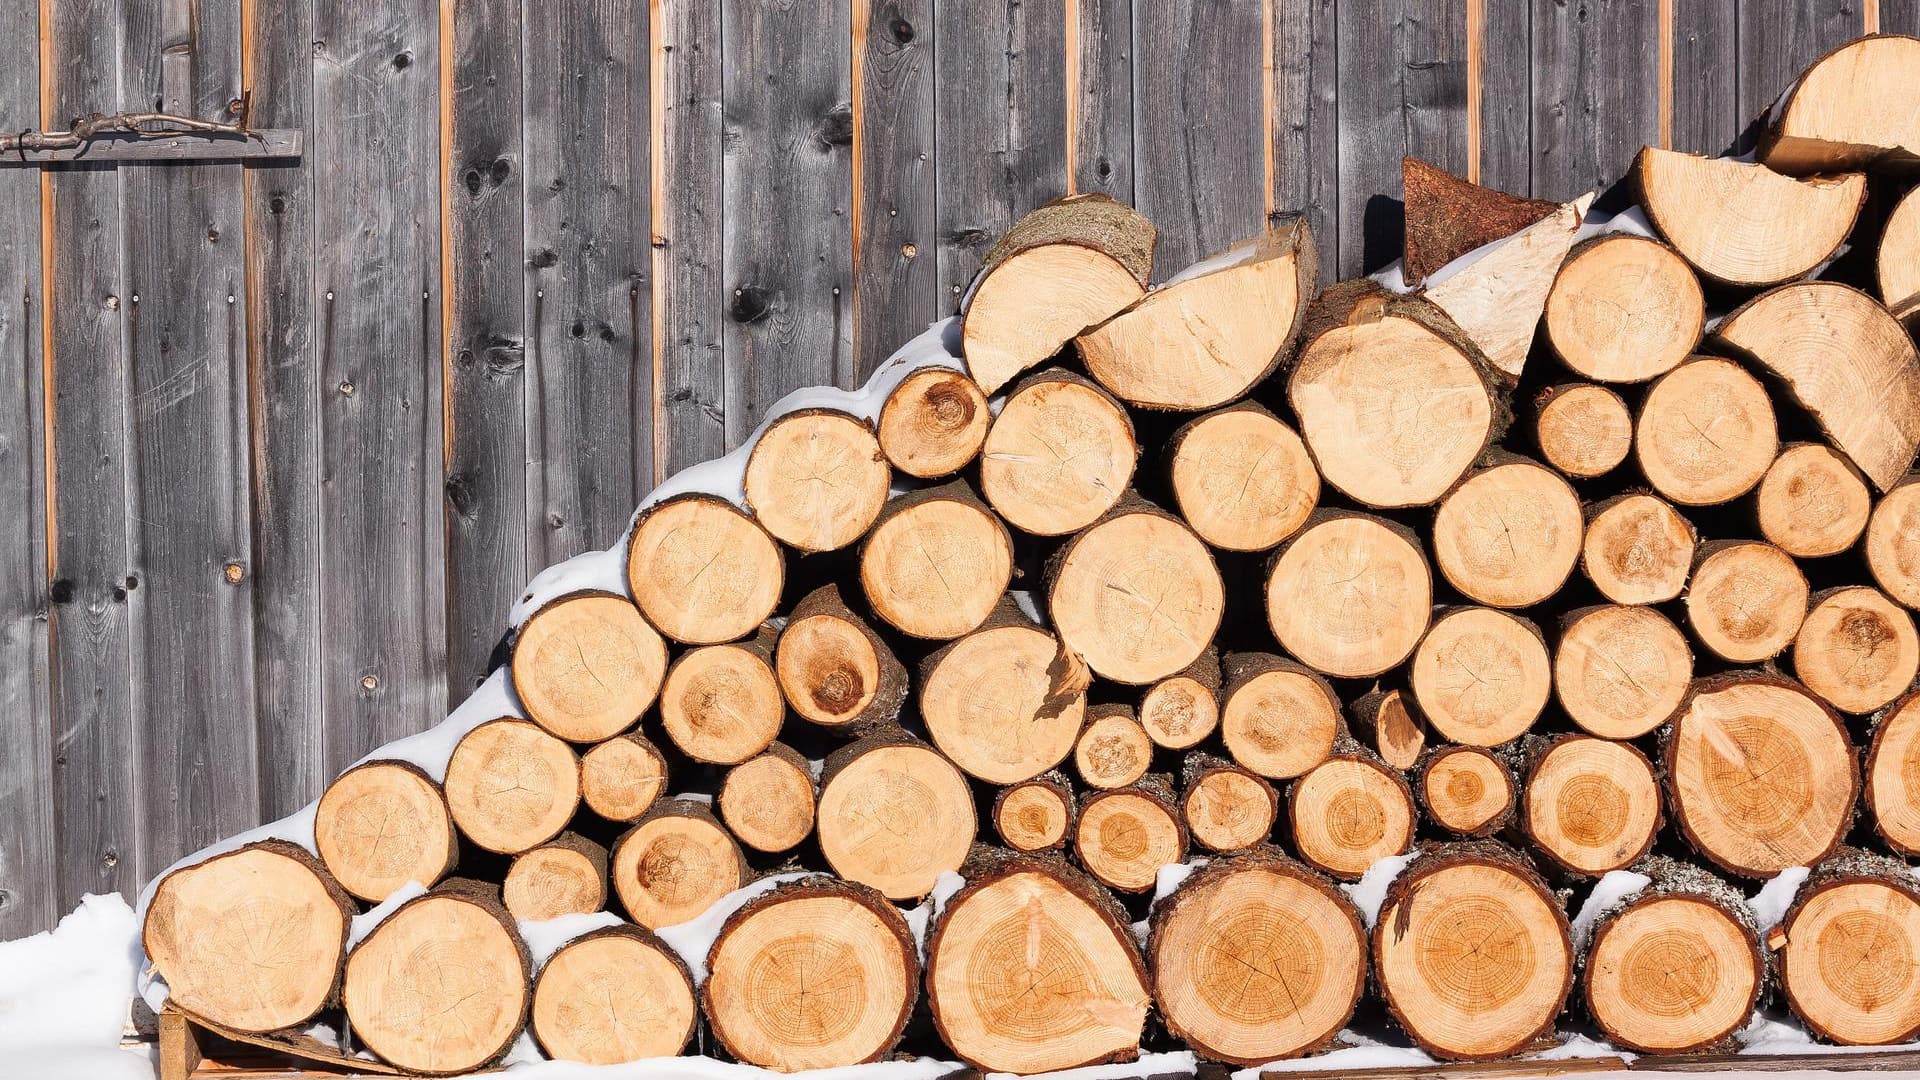 Chauffage: quelles sont les règles pour aller couper du bois en forêt